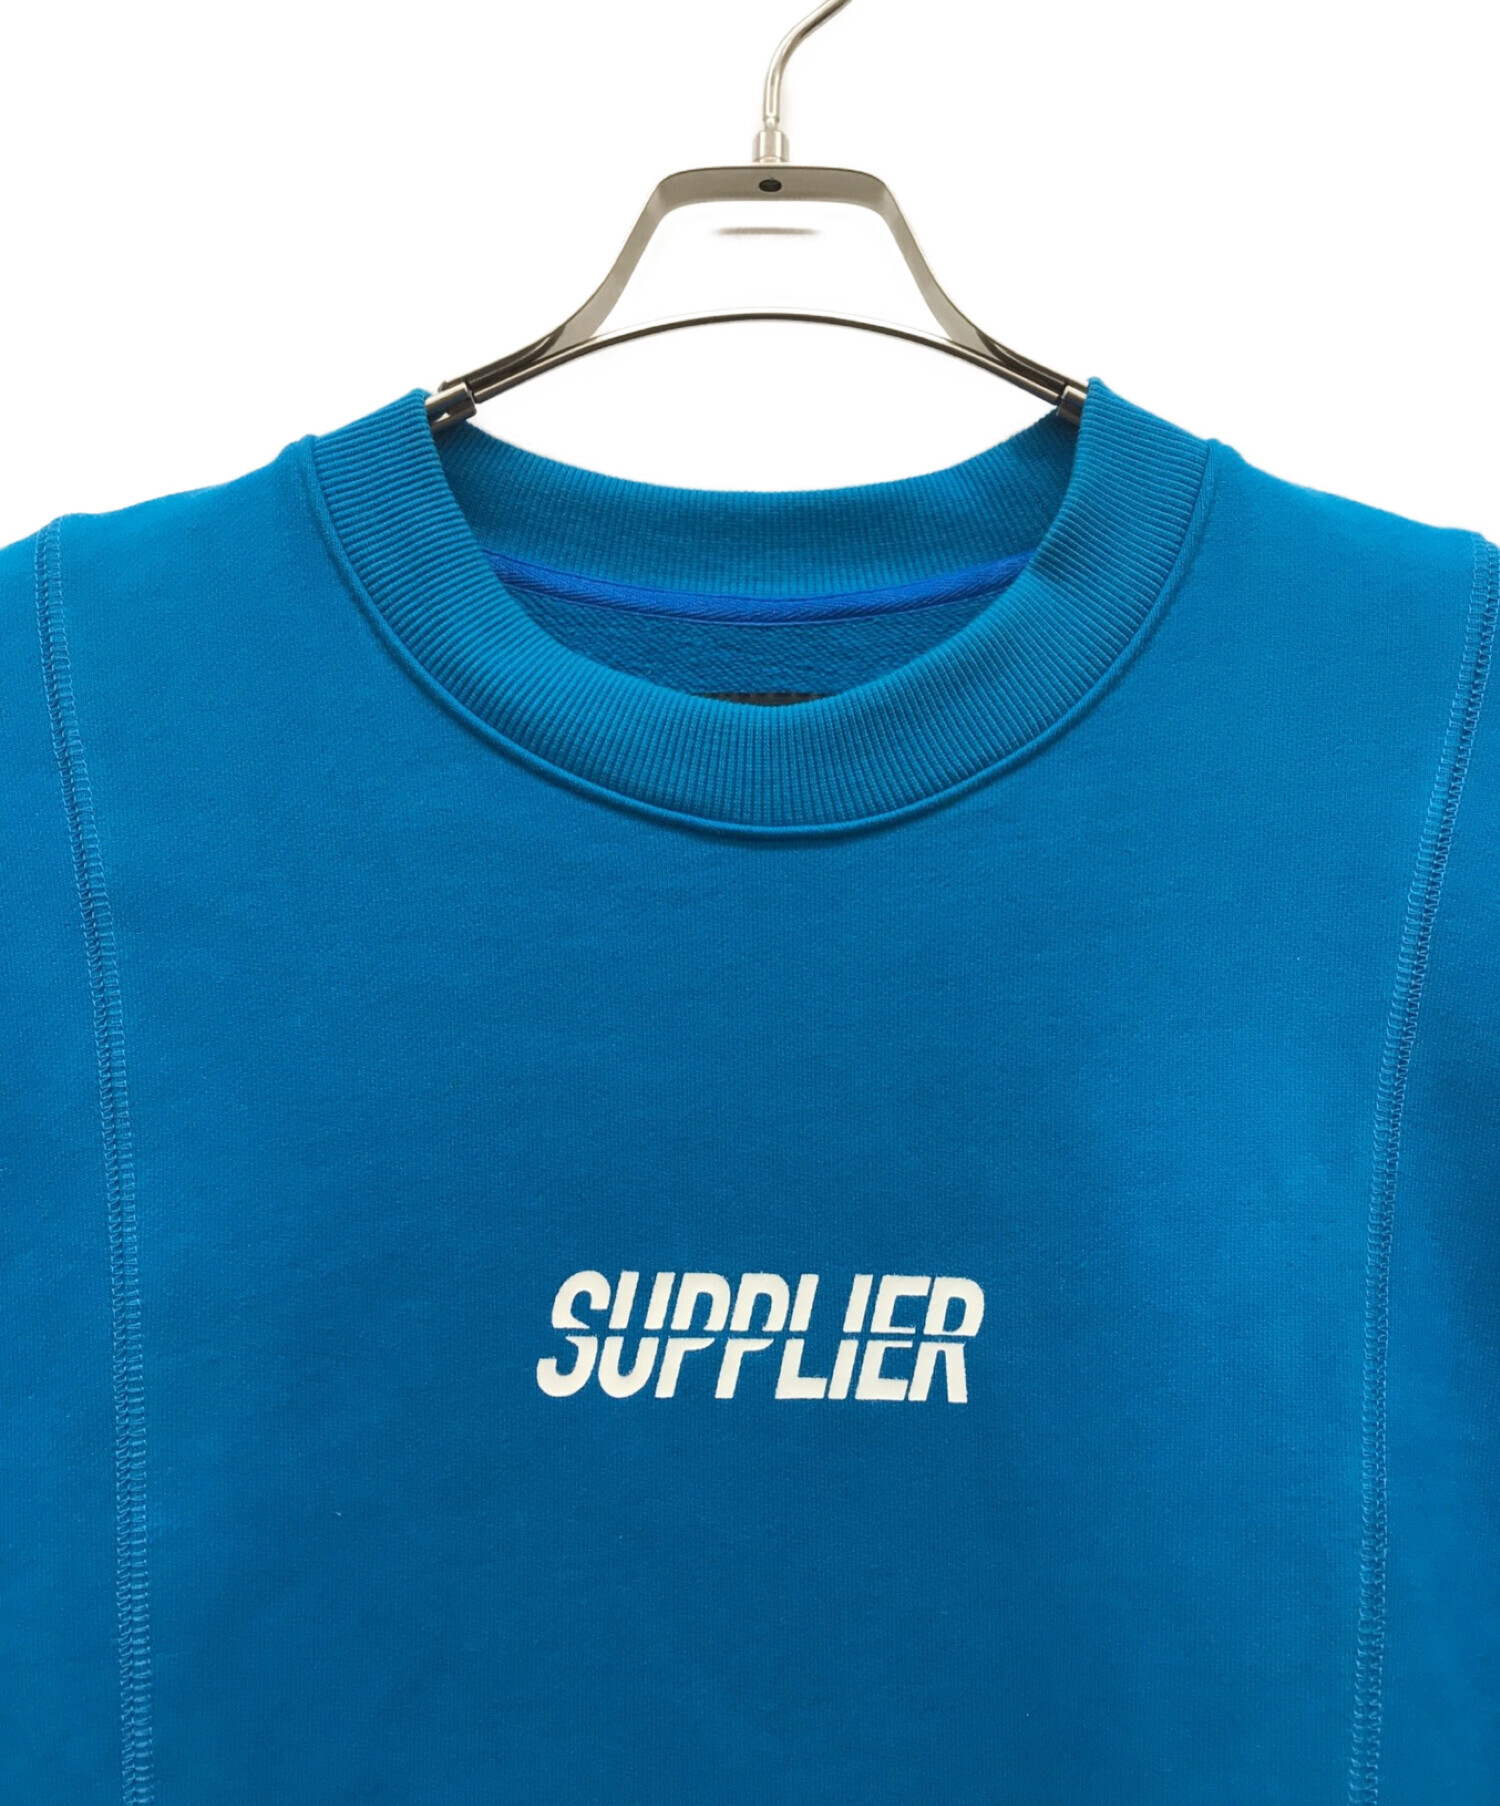 SUPPLIER (サプライヤー) ロゴスウェット ブルー サイズ:XL